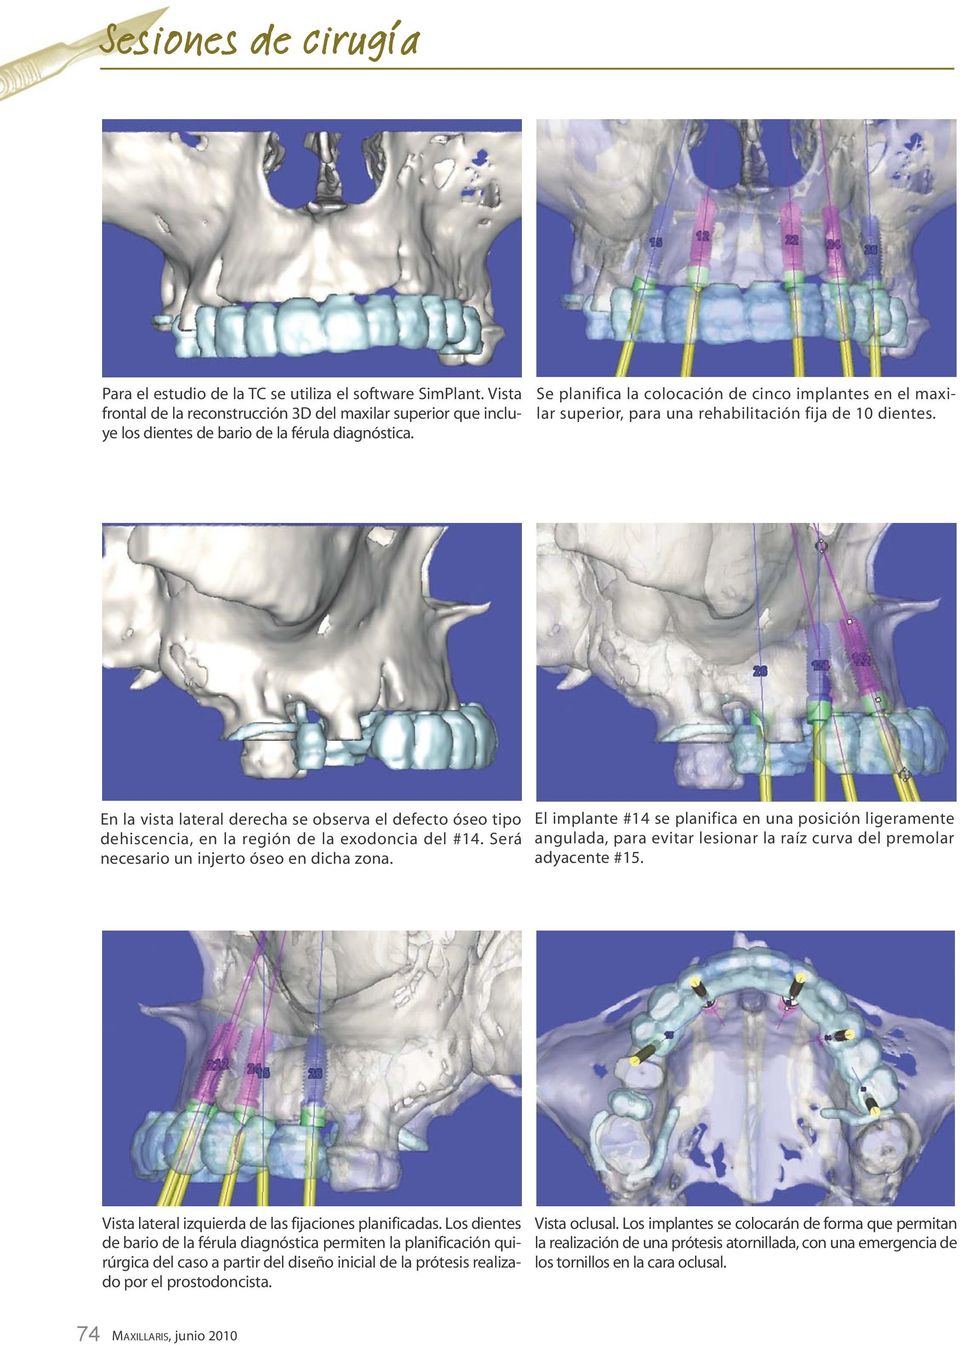 En la vista lateral derecha se observa el defecto óseo tipo dehiscencia, en la región de la exodoncia del #14. Será necesario un injerto óseo en dicha zona.